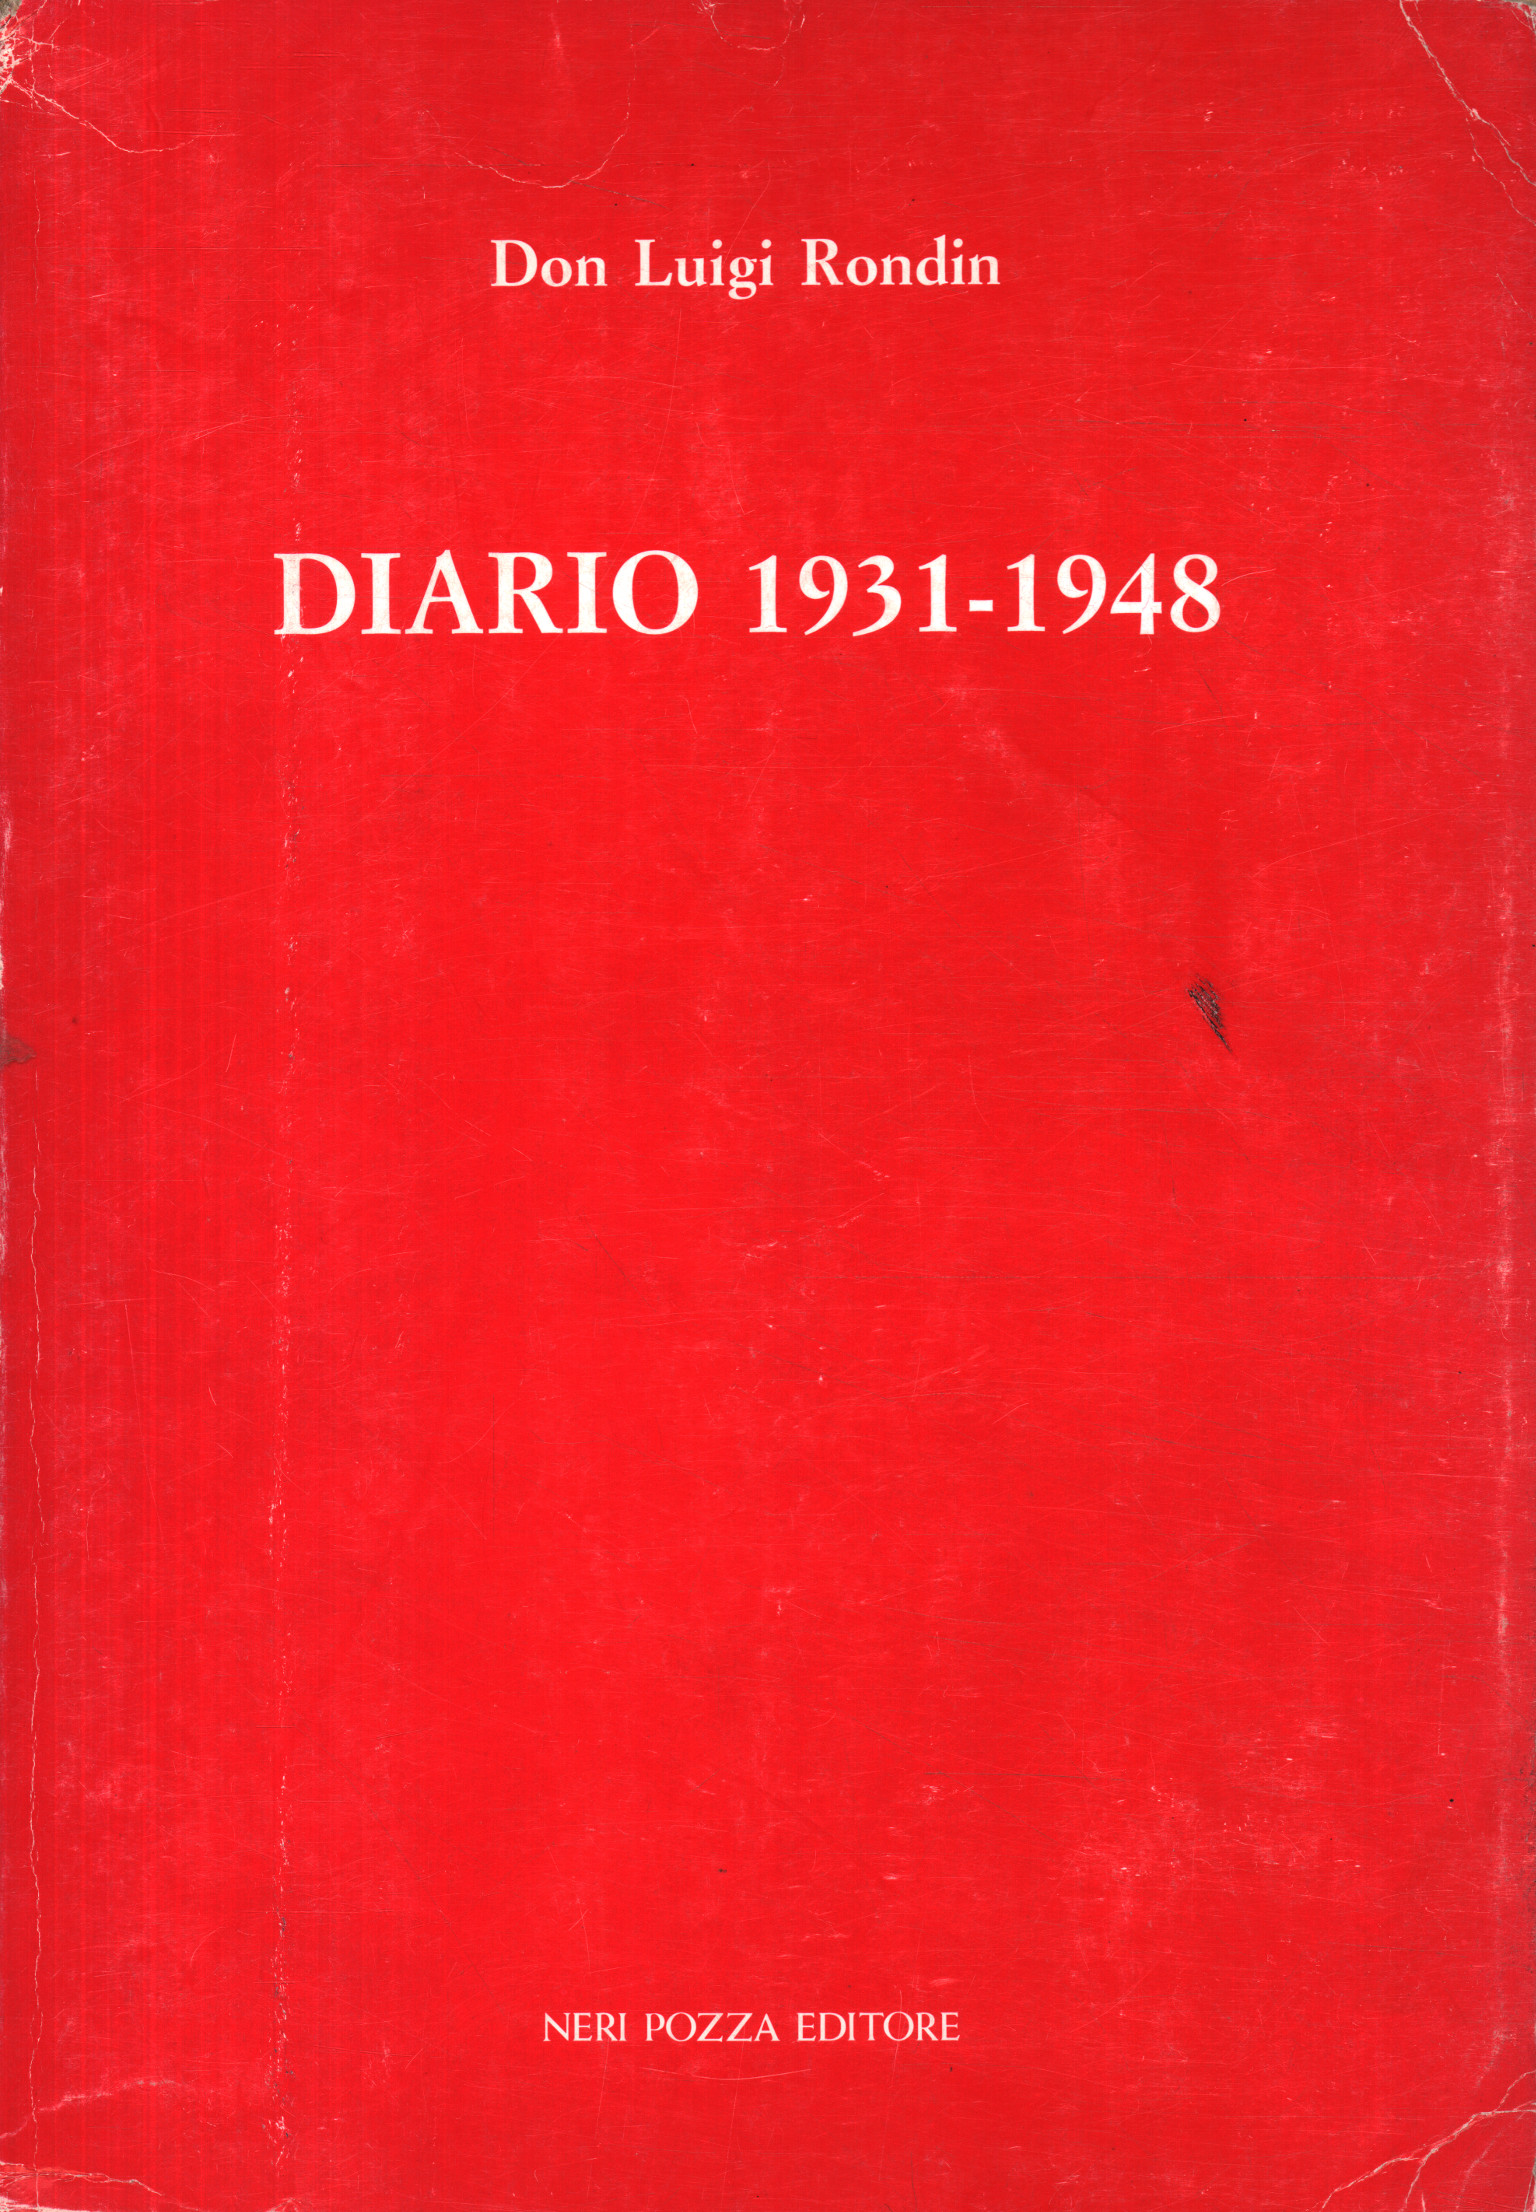 Diary 1931-1948